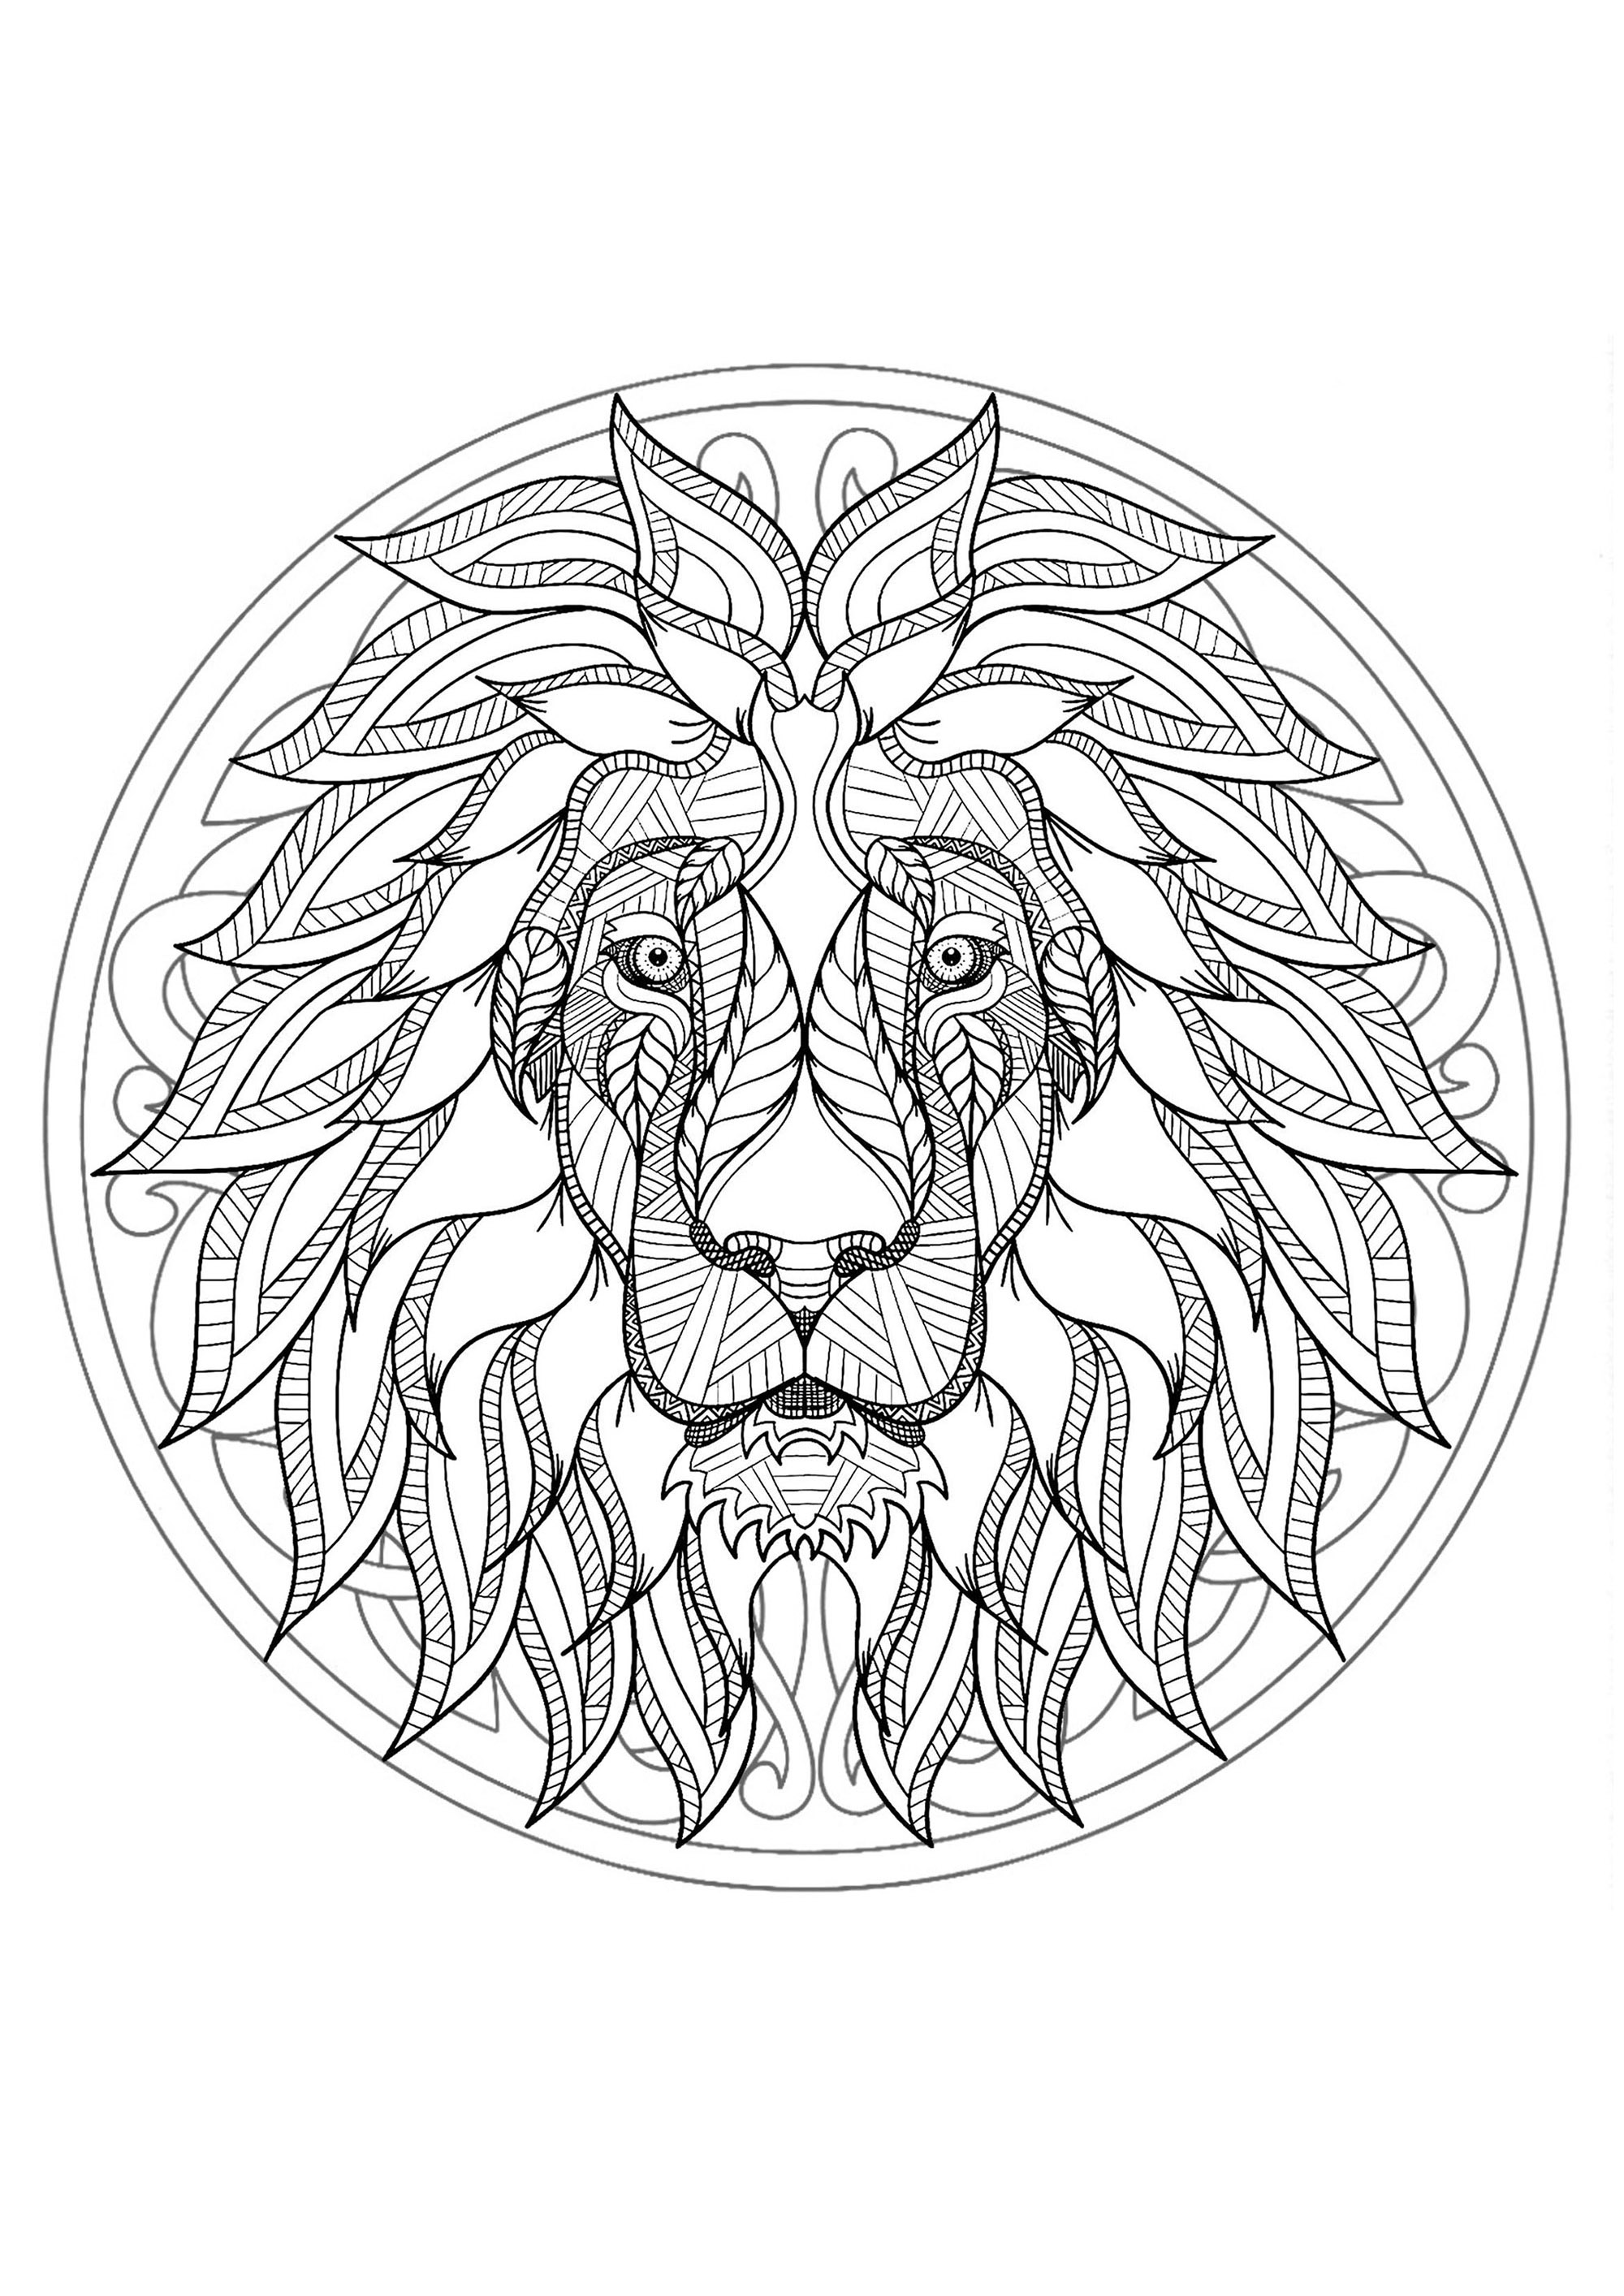 Este hermoso león está esperando a que lo colorees en este bonito y original mandala, así que tú decides.